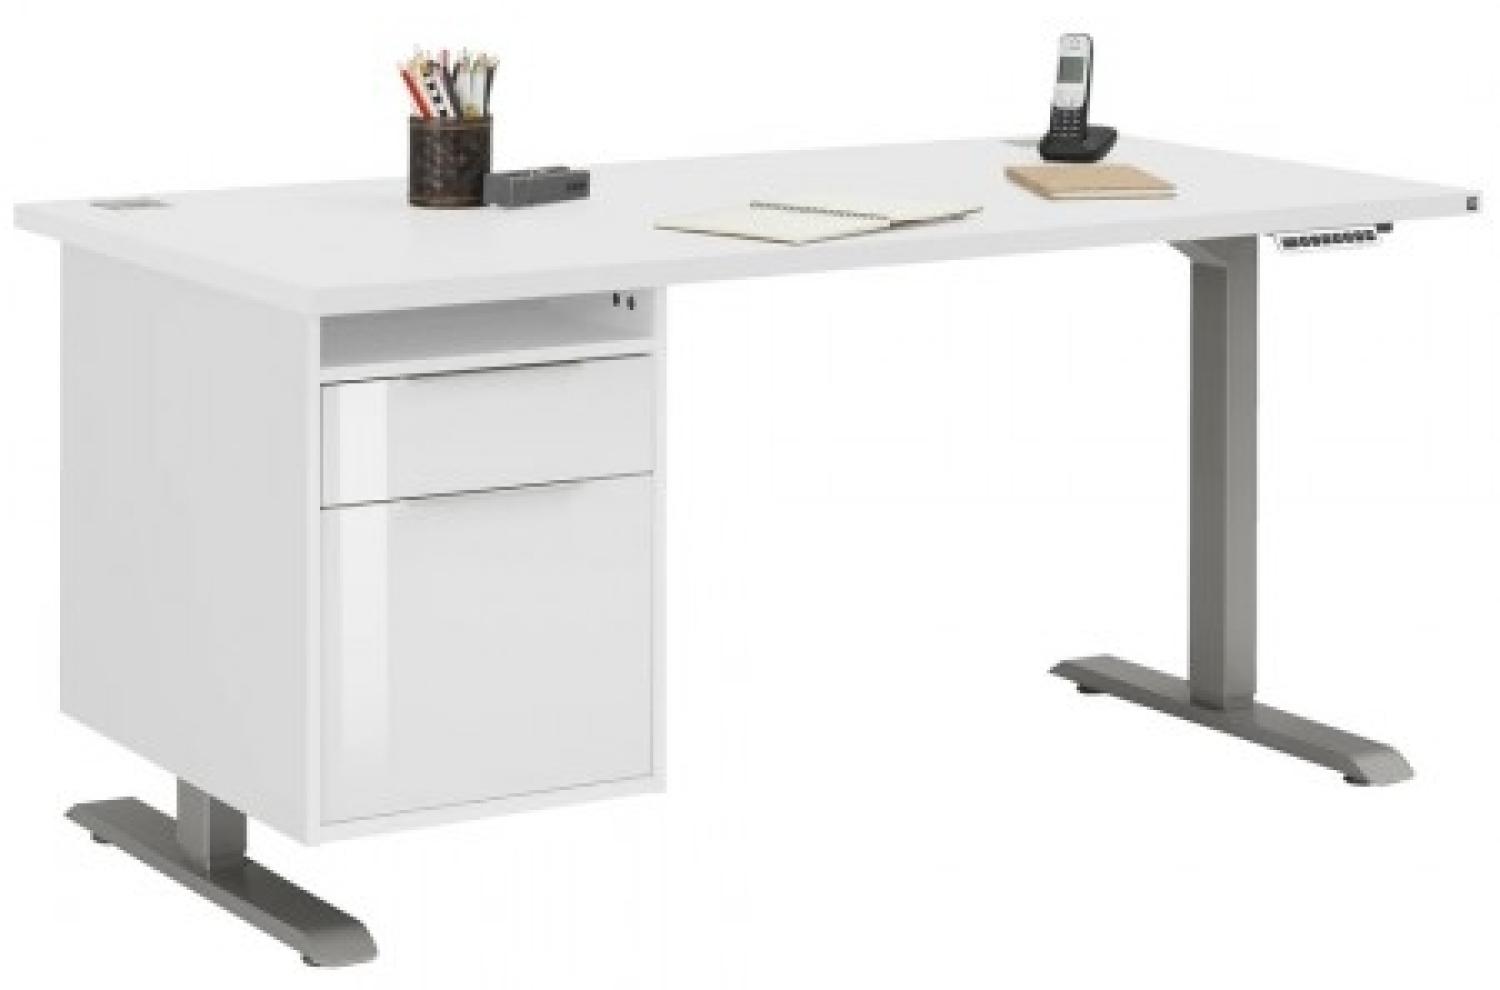 Maja Höhenverstellbarer Schreibtisch 5518 Roheisen natur lackiert - weiß matt Bild 1